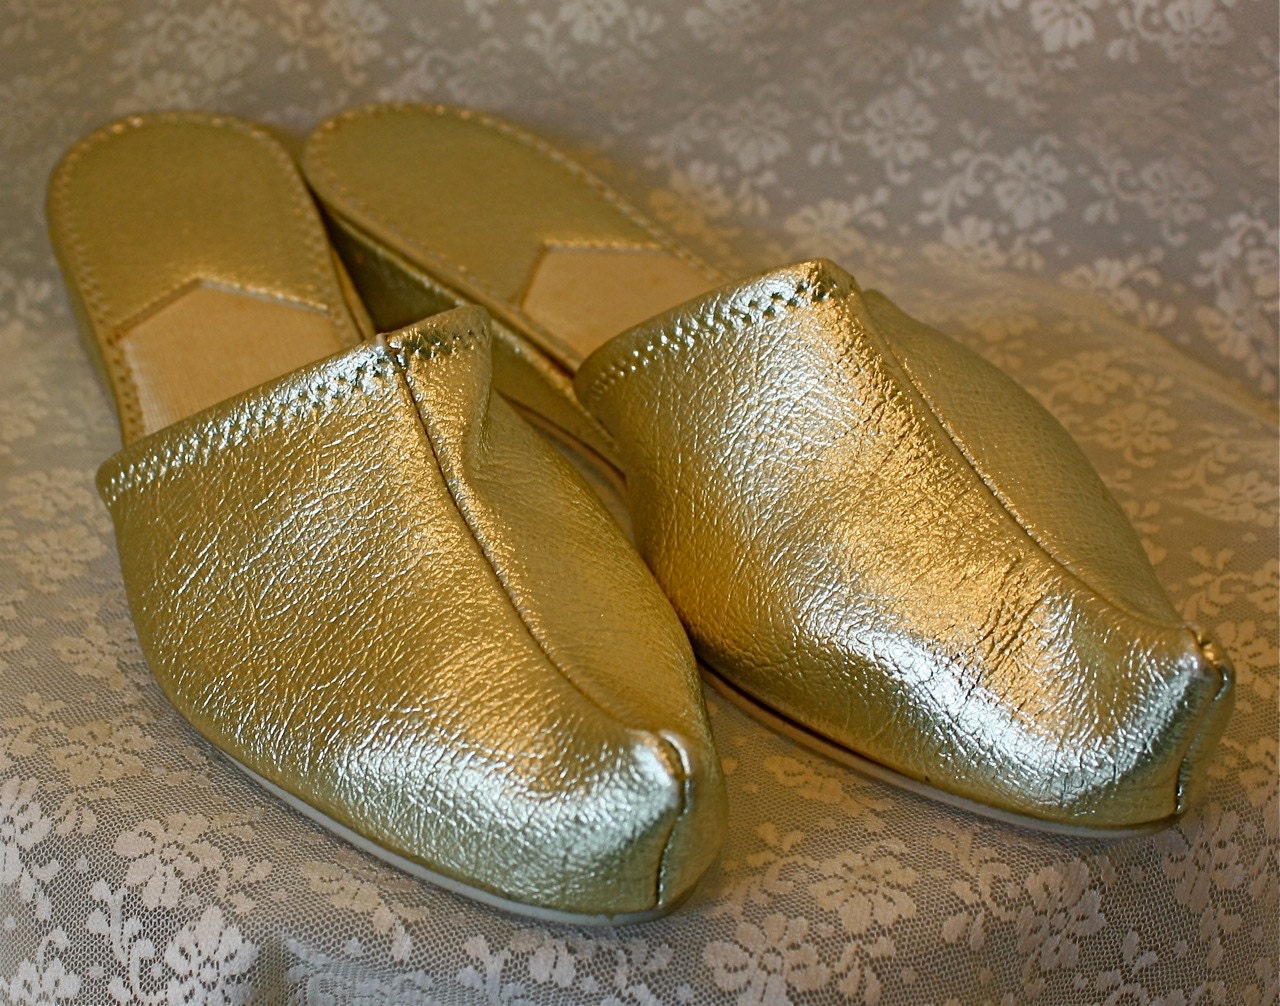 snoke slippers